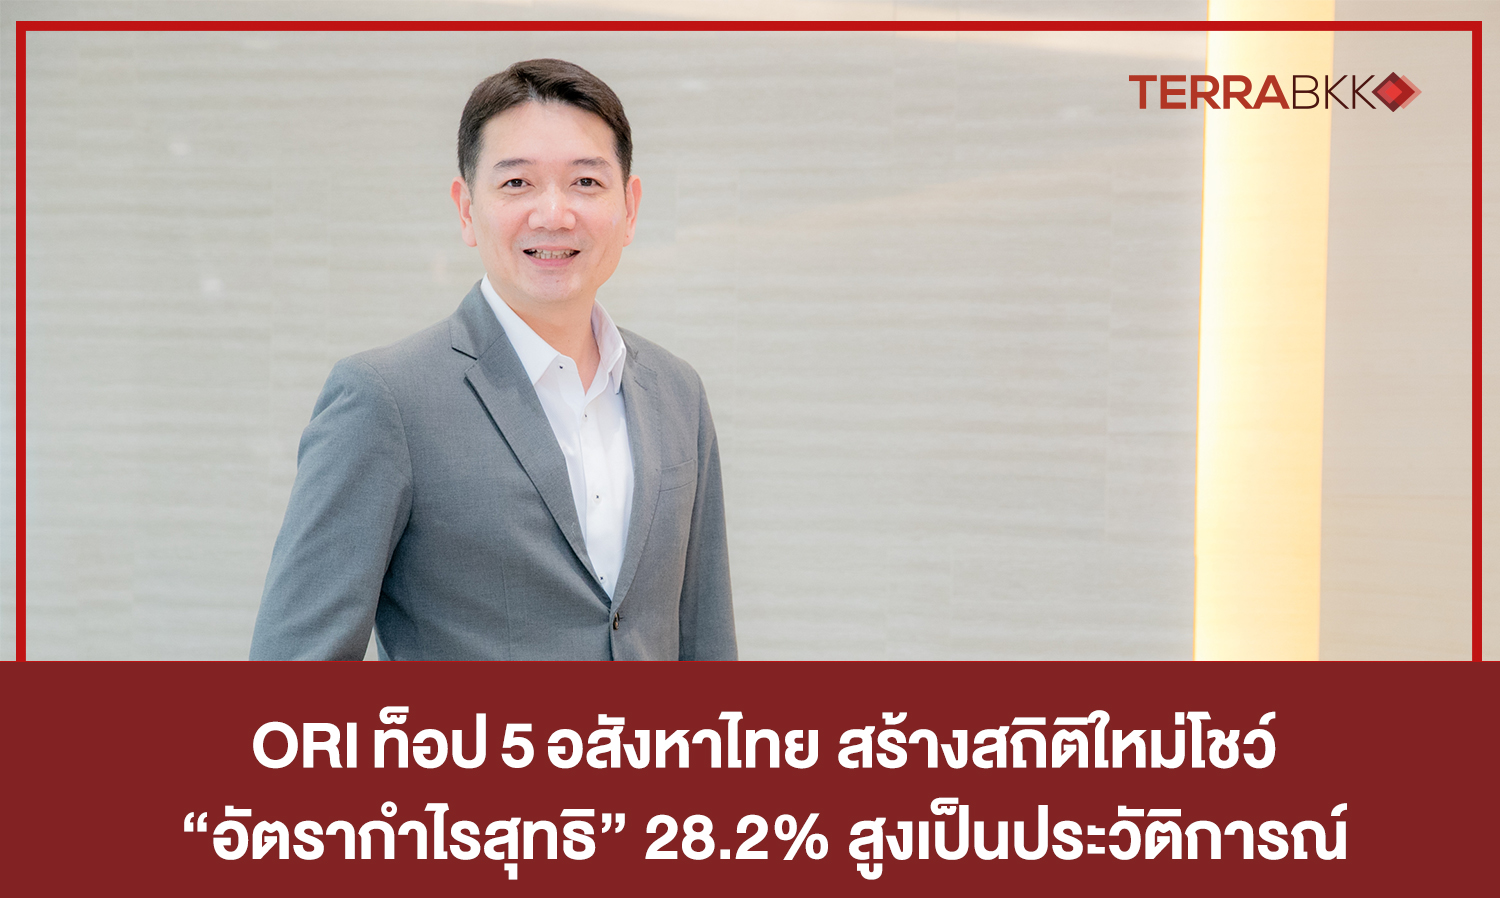 ORI ท็อป 5 อสังหาไทย สร้างสถิติใหม่โชว์ “อัตรากำไรสุทธิ” 28.2%   สูงเป็นประวัติการณ์ หลังโครงการ JV สร้างยอดโอนโดดเด่น  